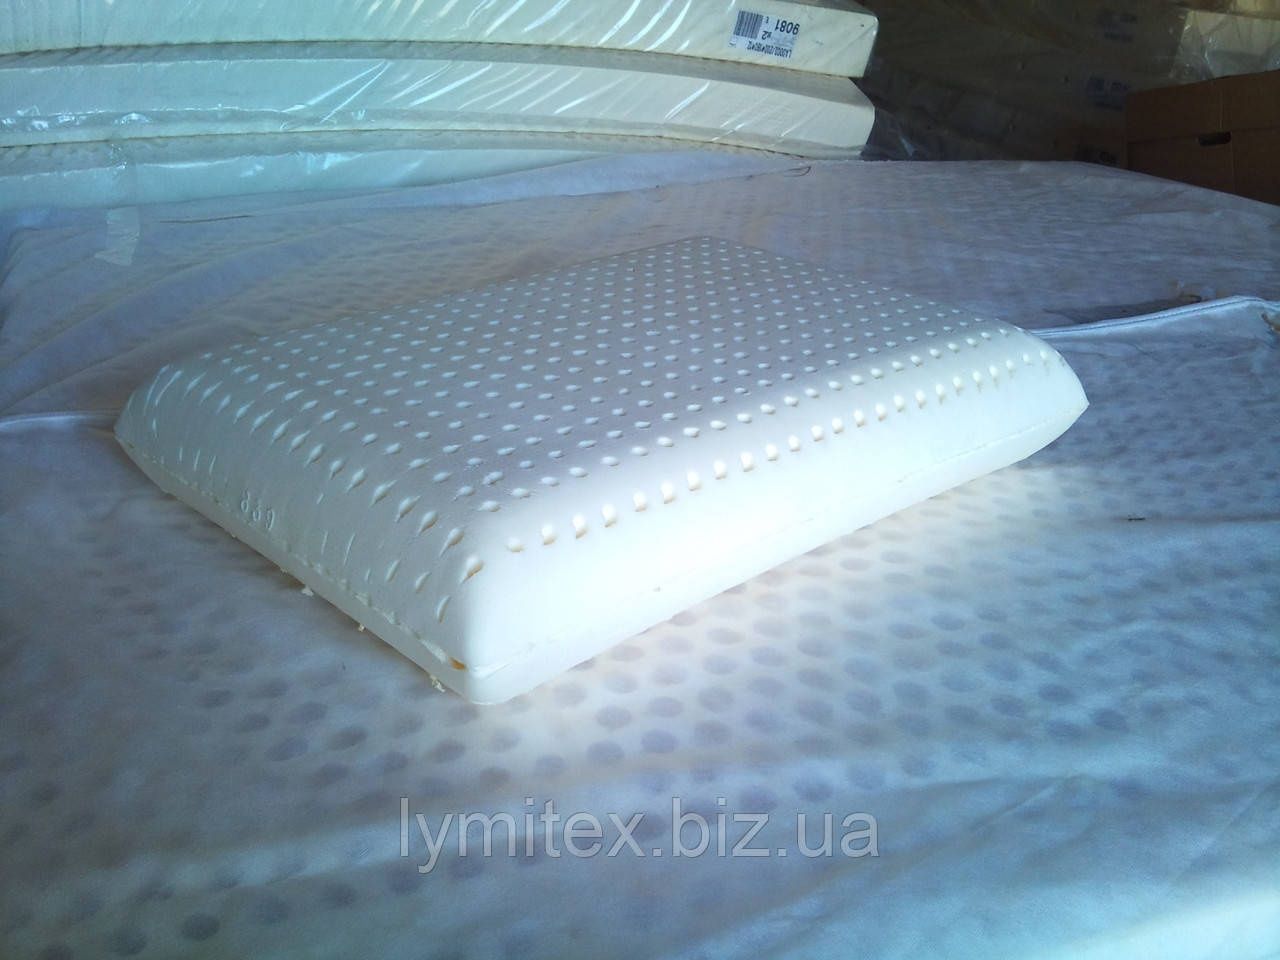 Латексная классическая подушка LATEX 40*60 - TM EKON Болгария